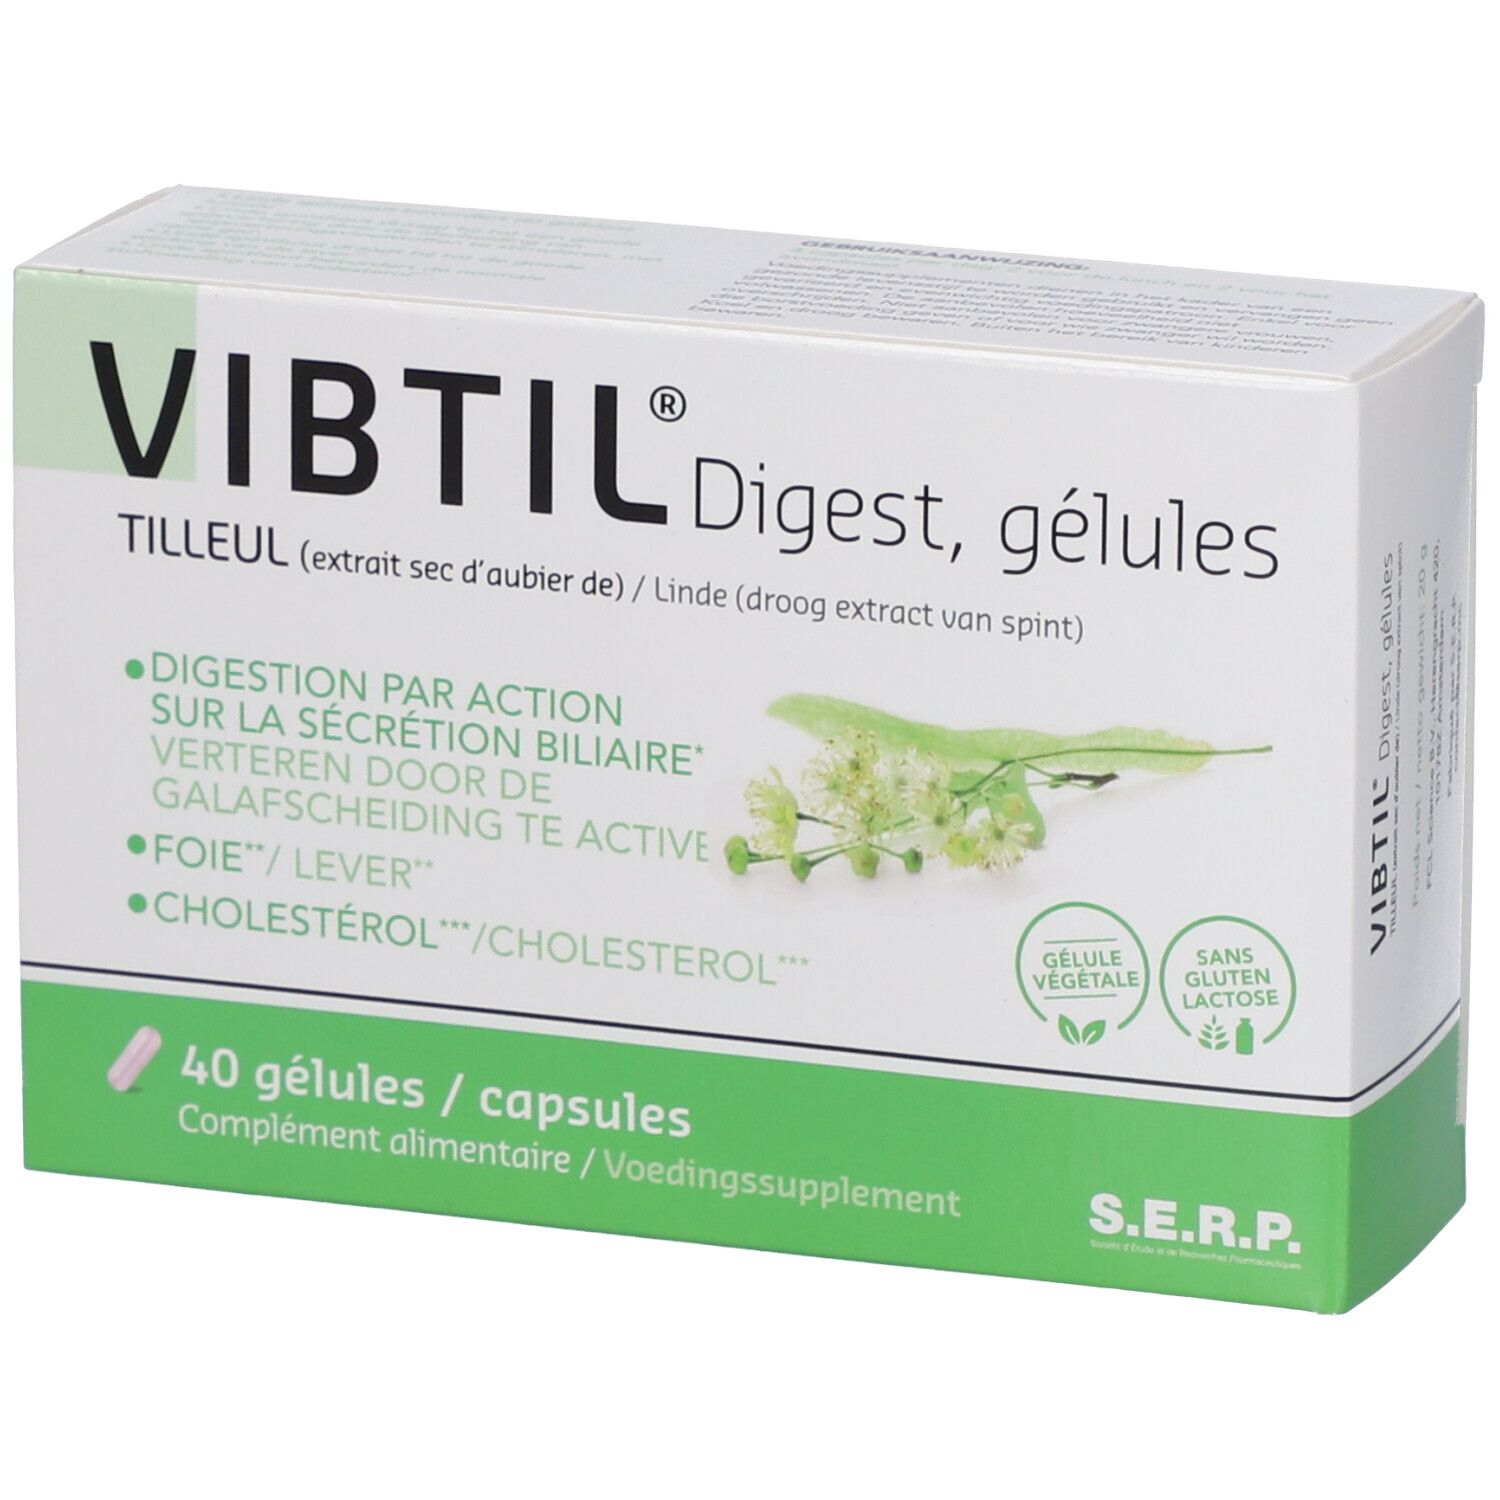 Vibtil® Digest